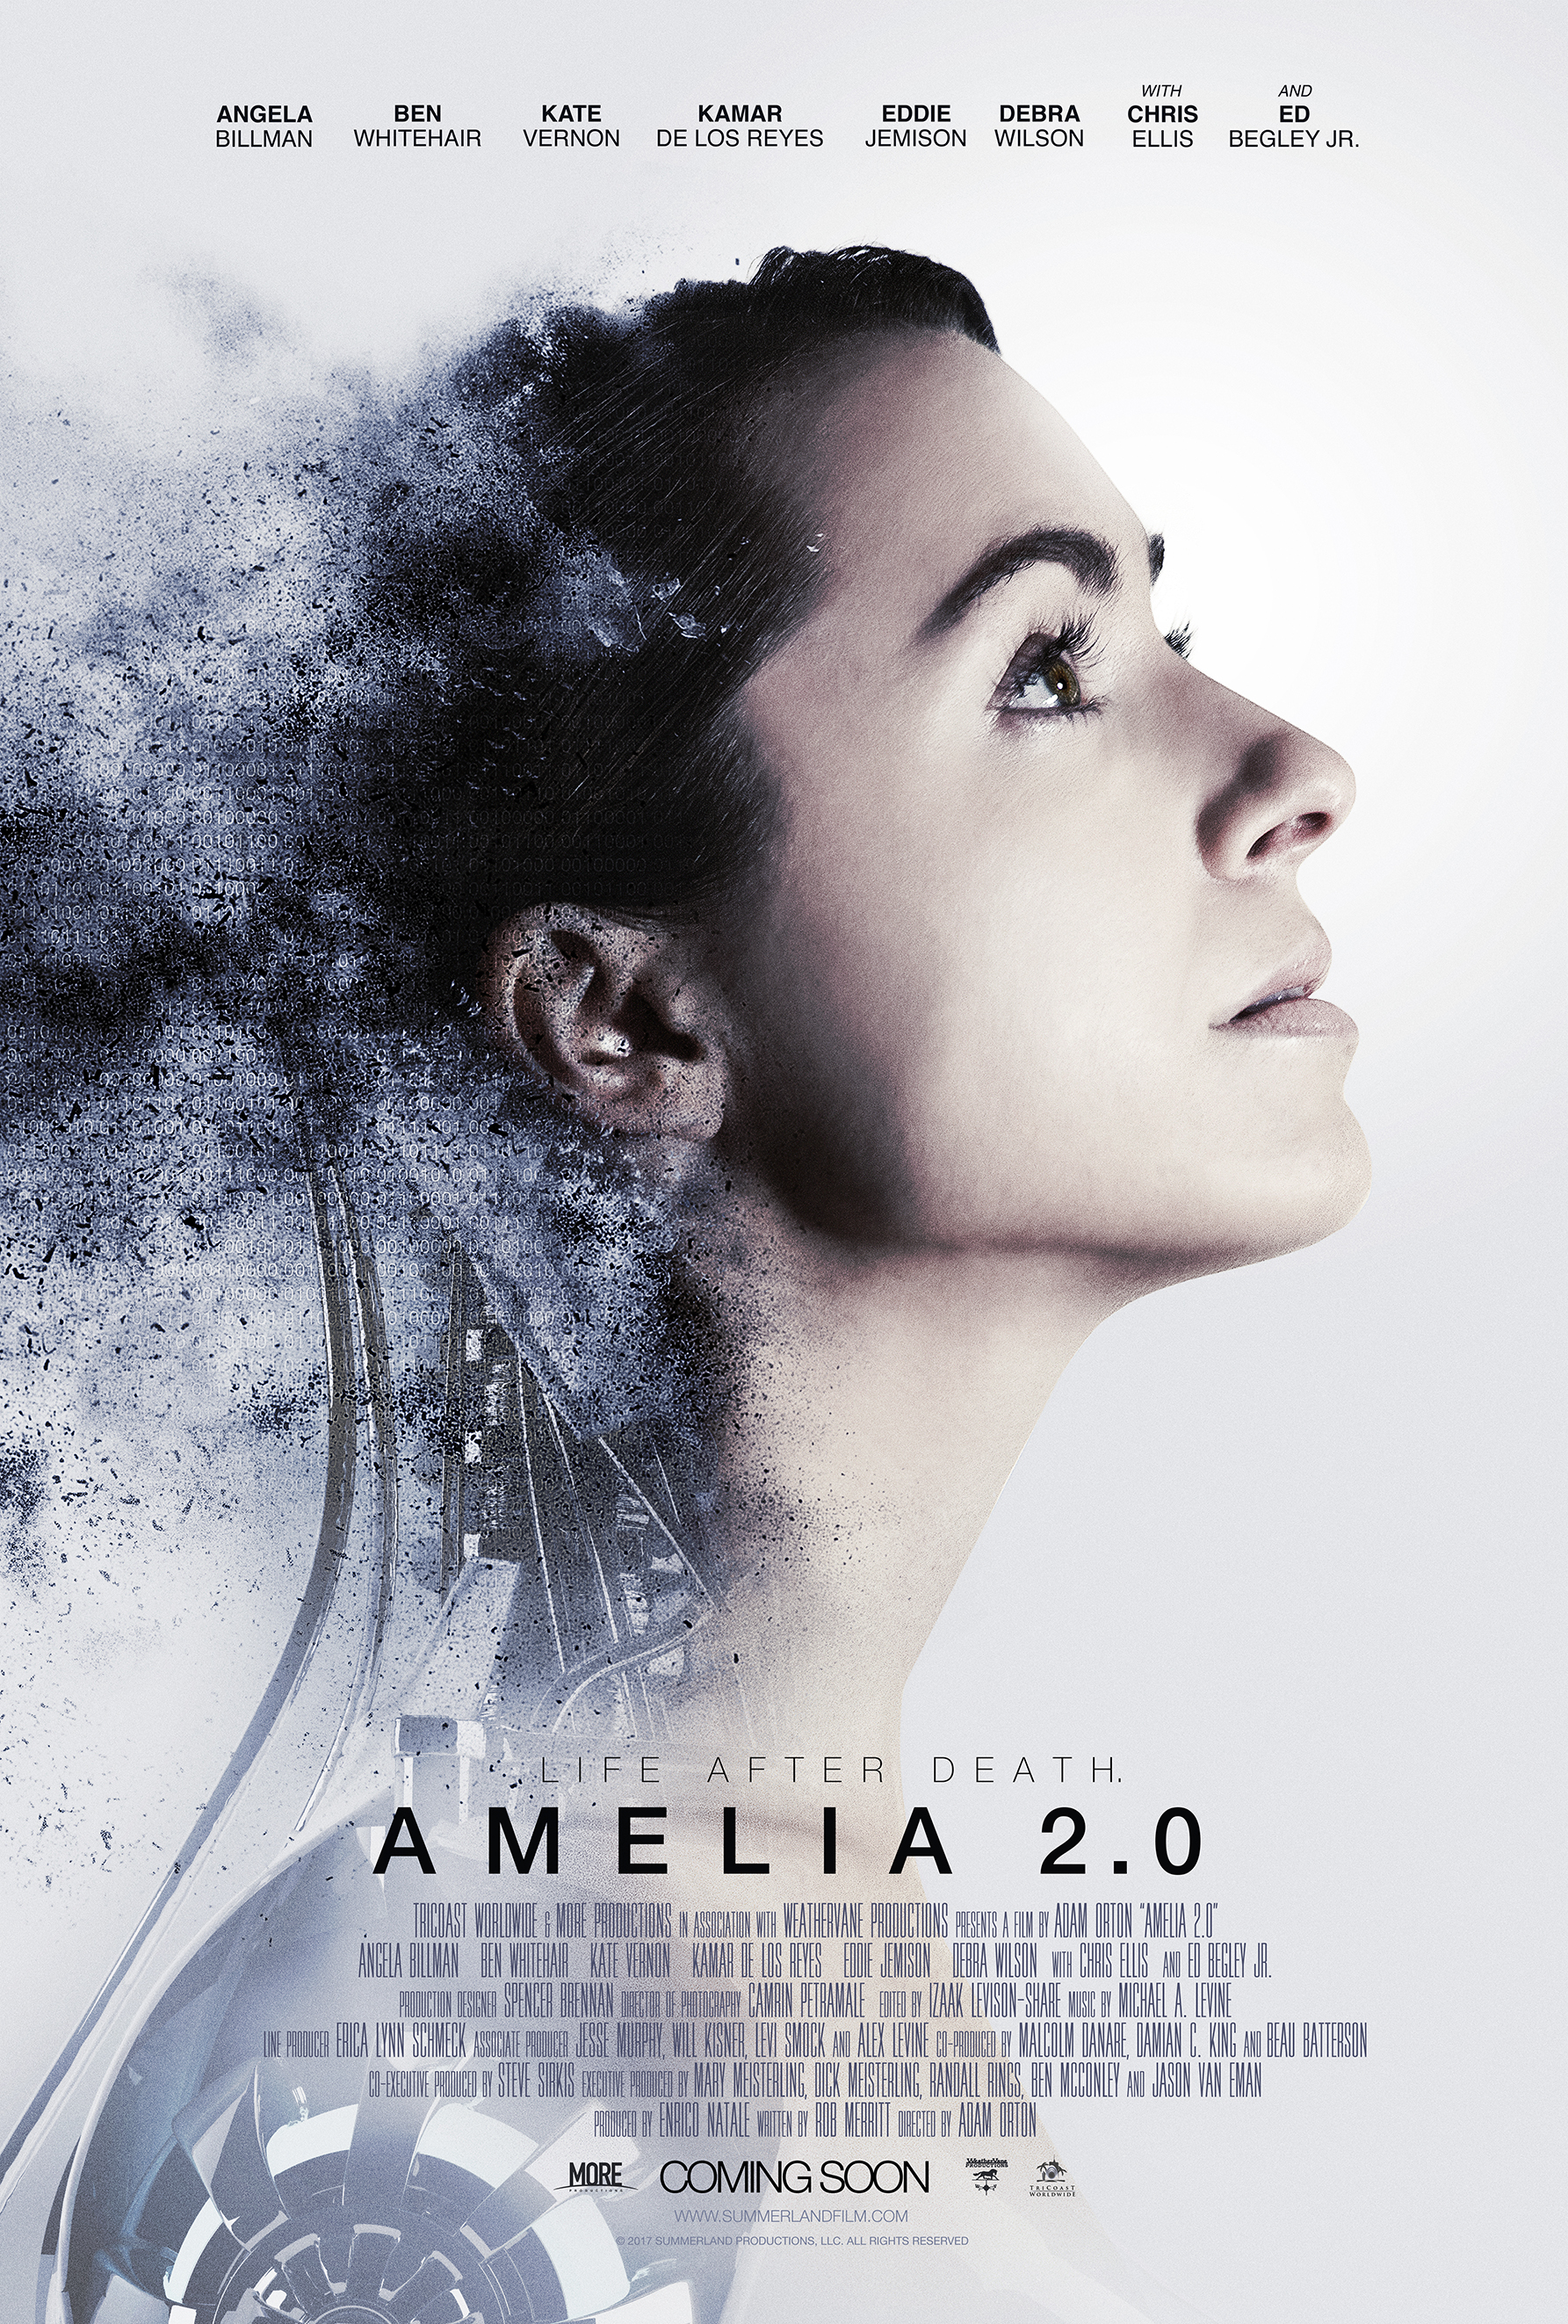 Amelia 2.0 (2017) Screenshot 4